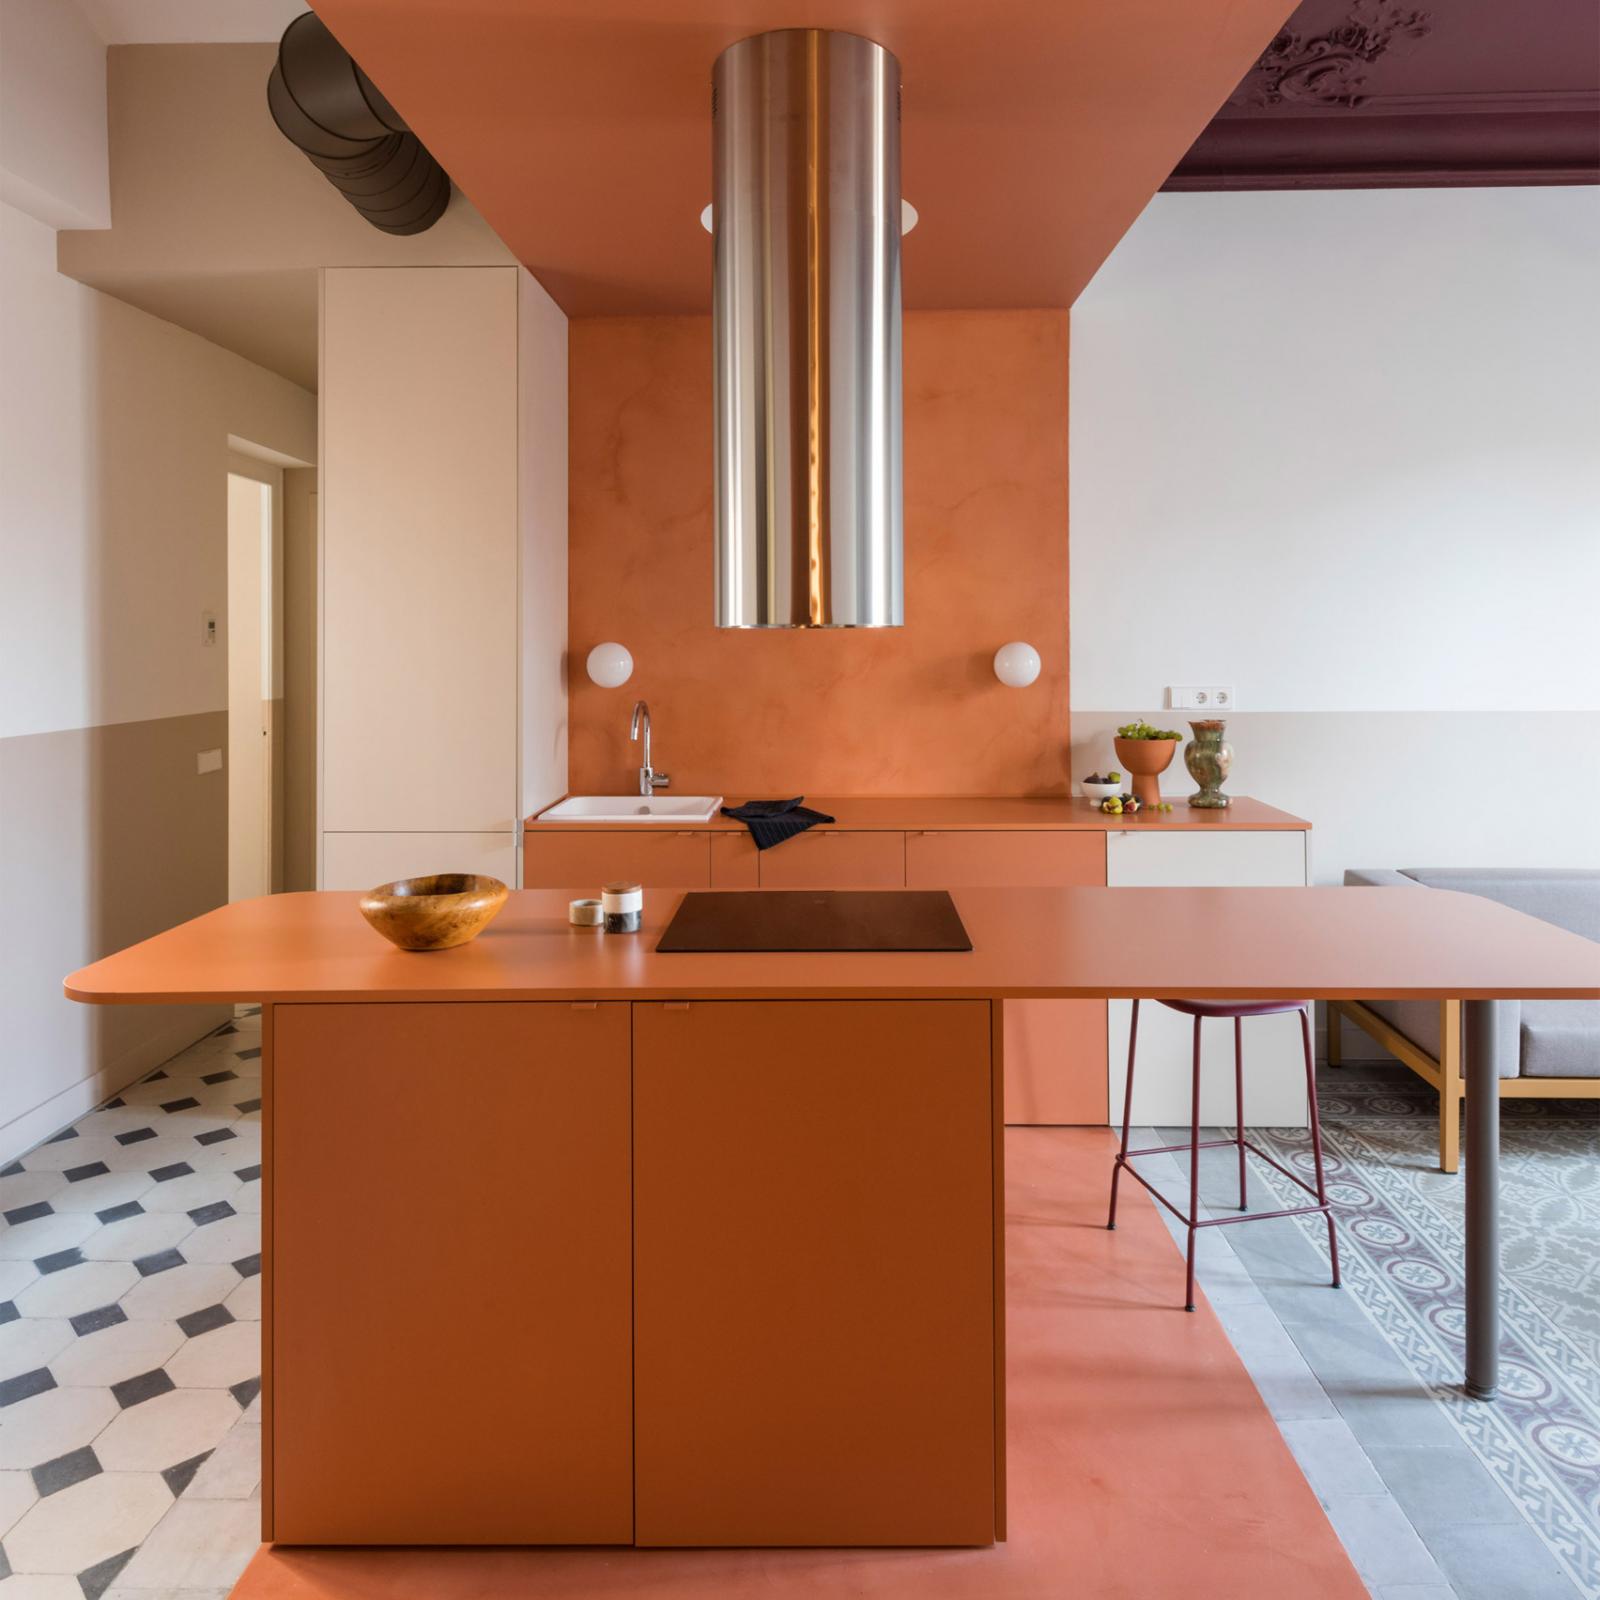 Tông màu cam được sử dụng tinh tế cho phòng bếp người mệnh Hỏa.